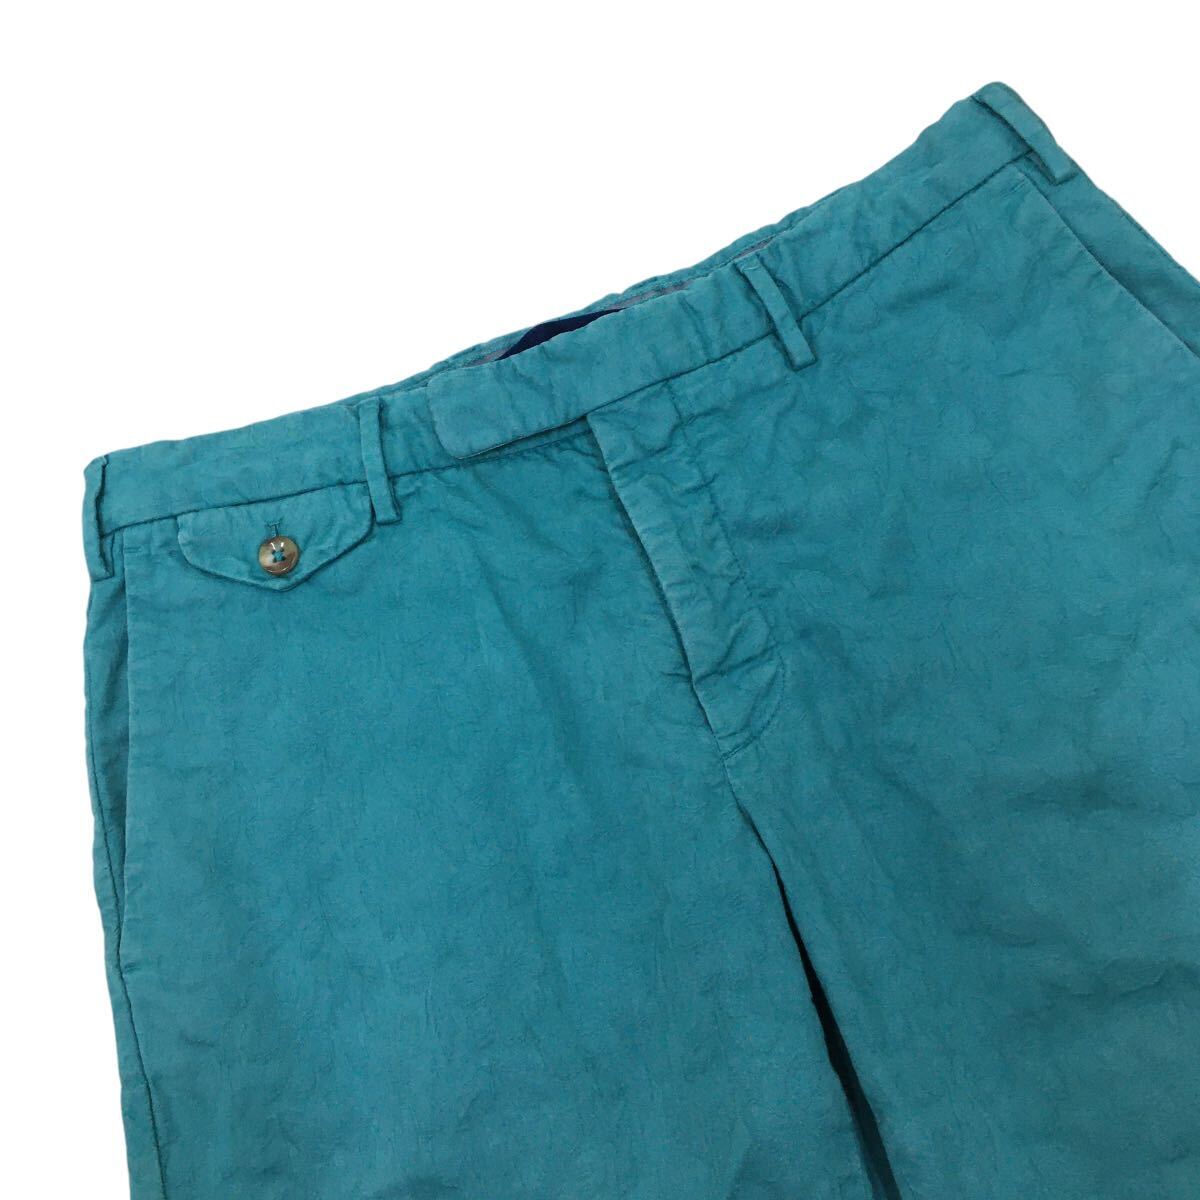 NC217 INCOTEX INCOTEX короткий хлеб шорты шорты низ укороченные брюки мужской 48 изумруд зеленый цветочный принт 